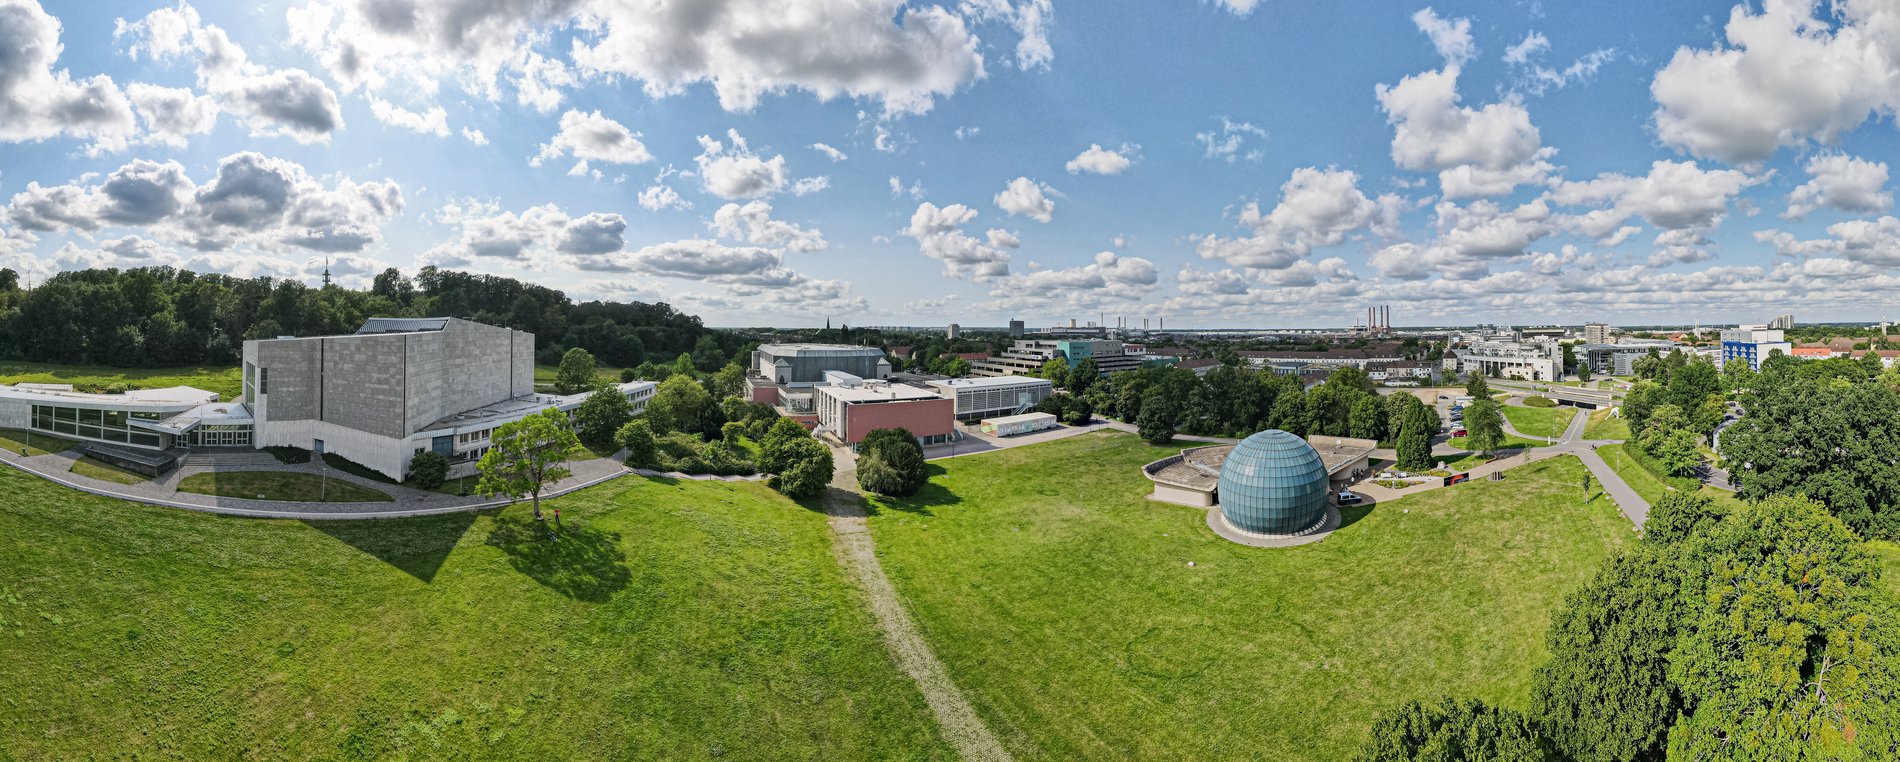 Man blickt aus der Luft auf das Sharoun Theater und den Kugelbau des Planetariums. Zwischen den beiden Gebäuden erkennt man den CongressPark Wolfsburg.